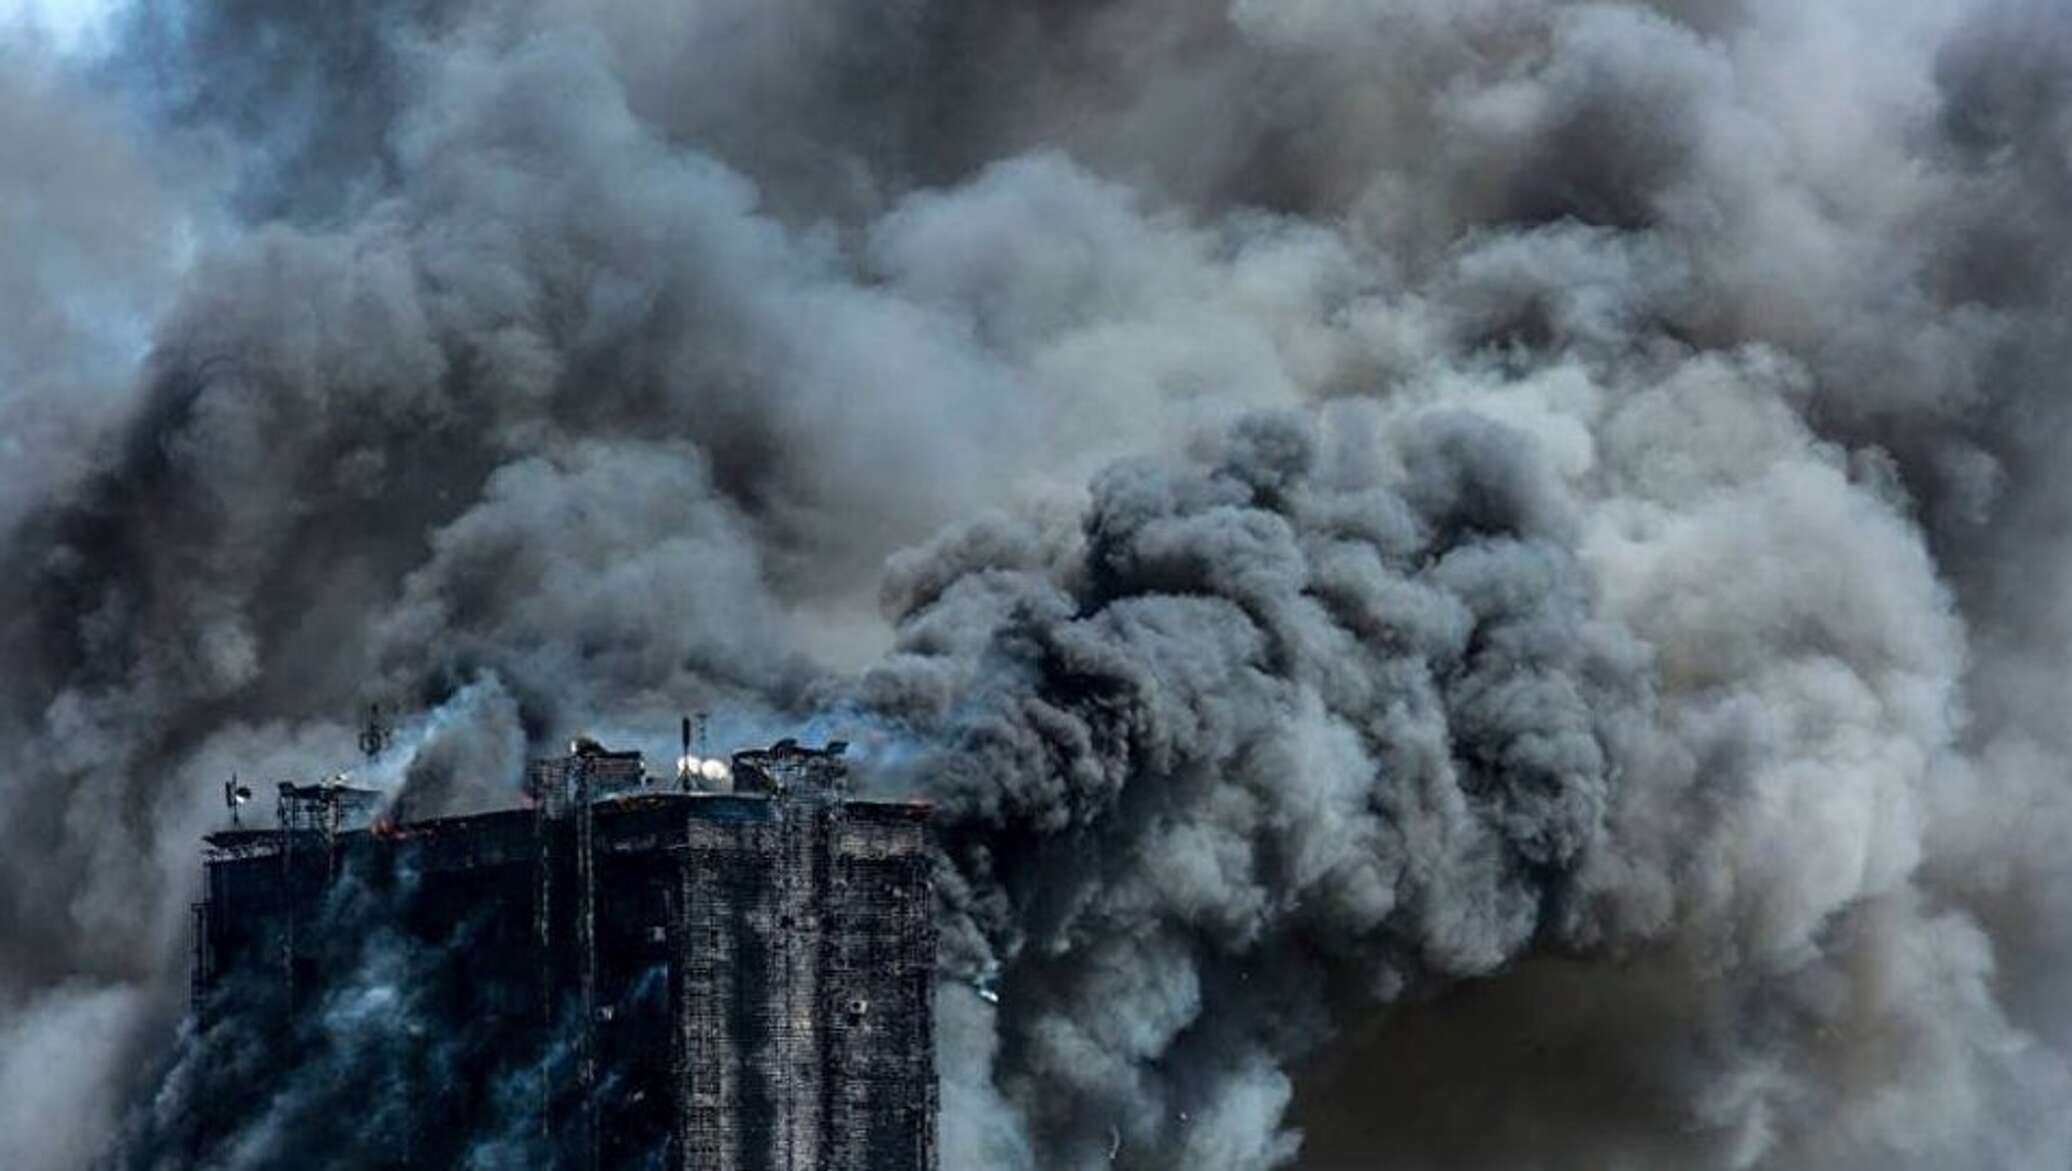 Дым после пожара. Пожар в Баку Азадлыг. Пожар на проспекте Азадлыг. Город в дыму. Дым от пожара здания.